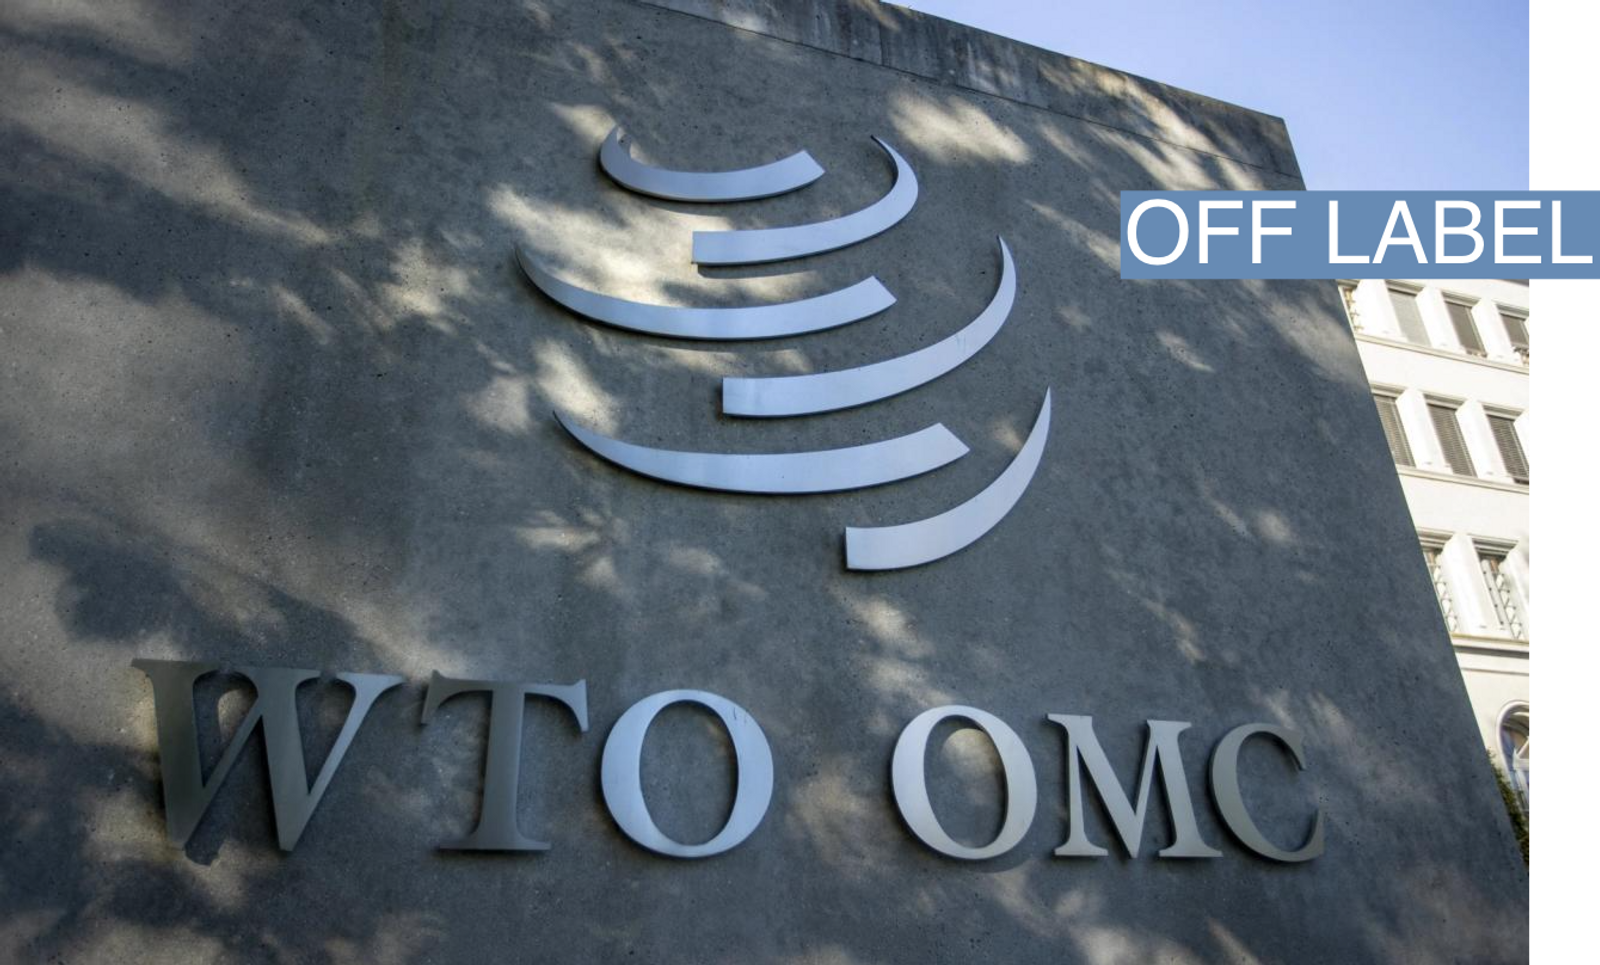 WTO logo